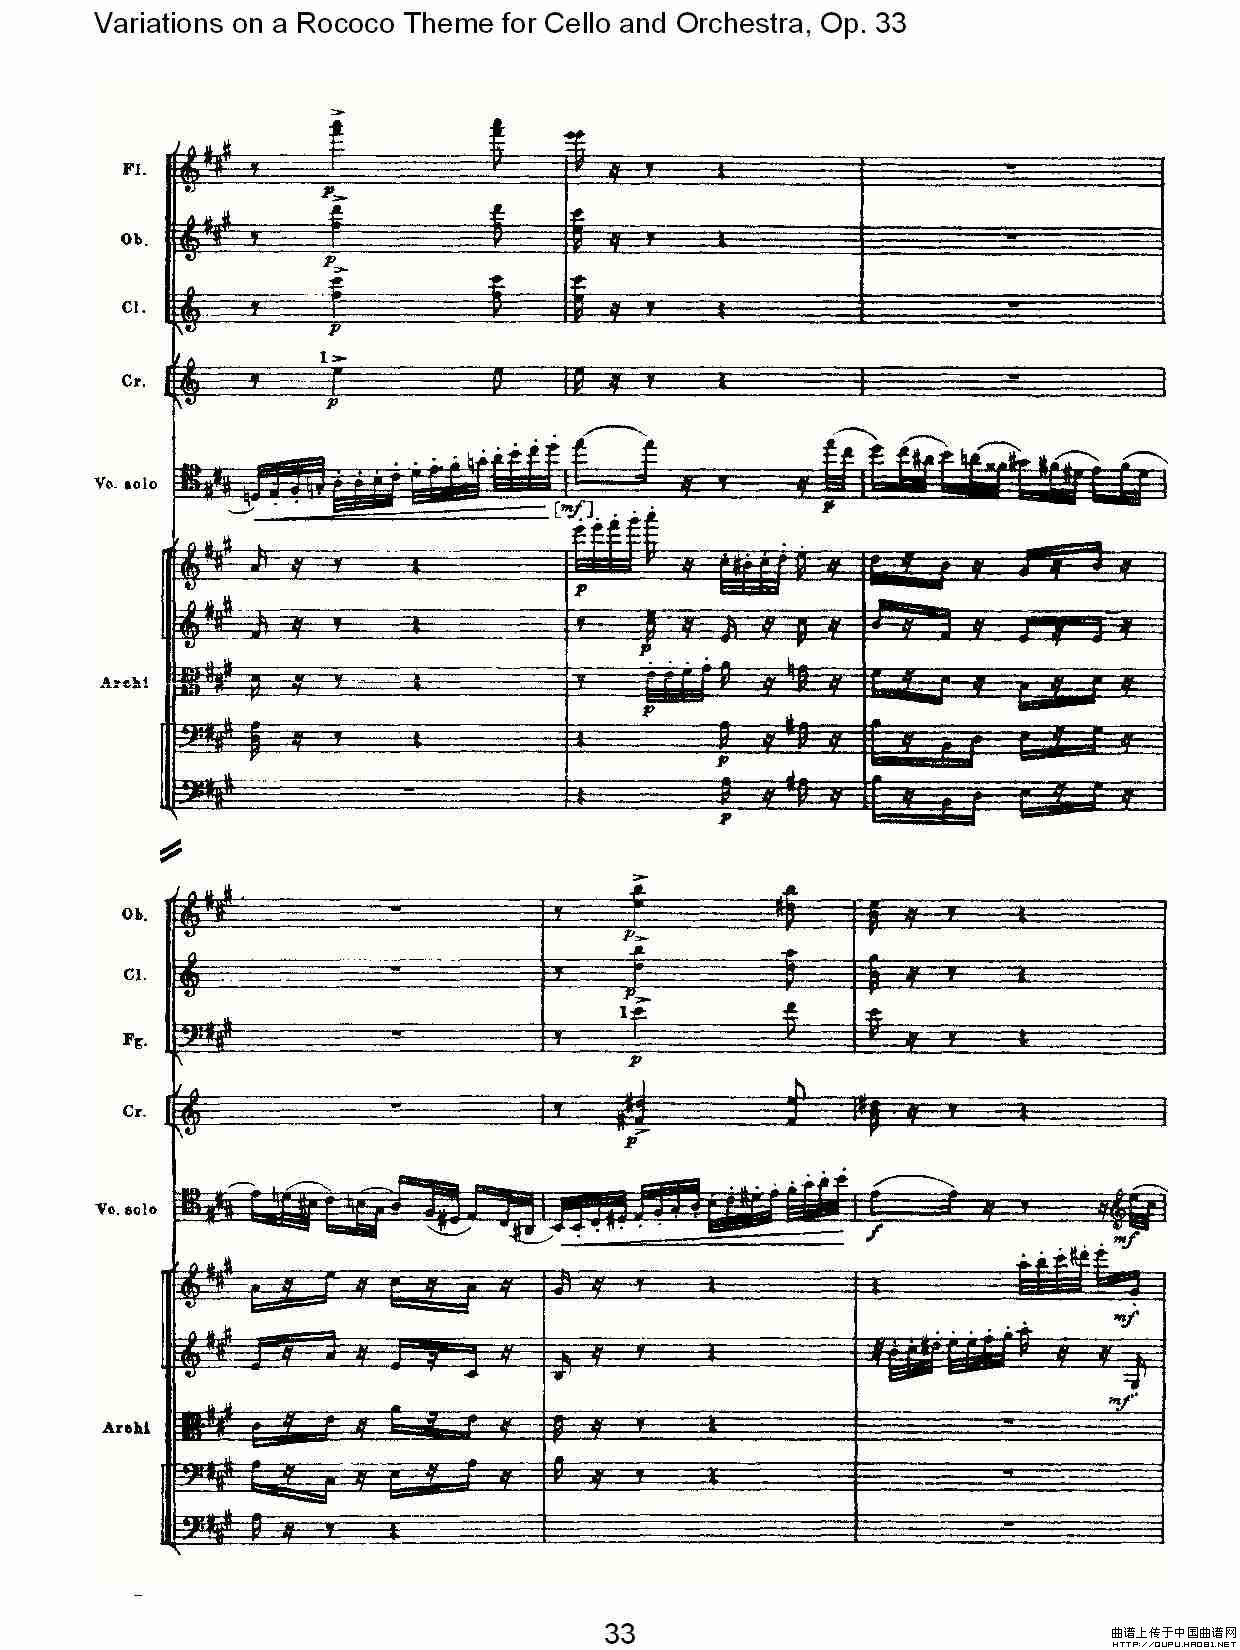 大提琴与管弦乐洛可可主题a小调变奏曲Op.33小提琴谱